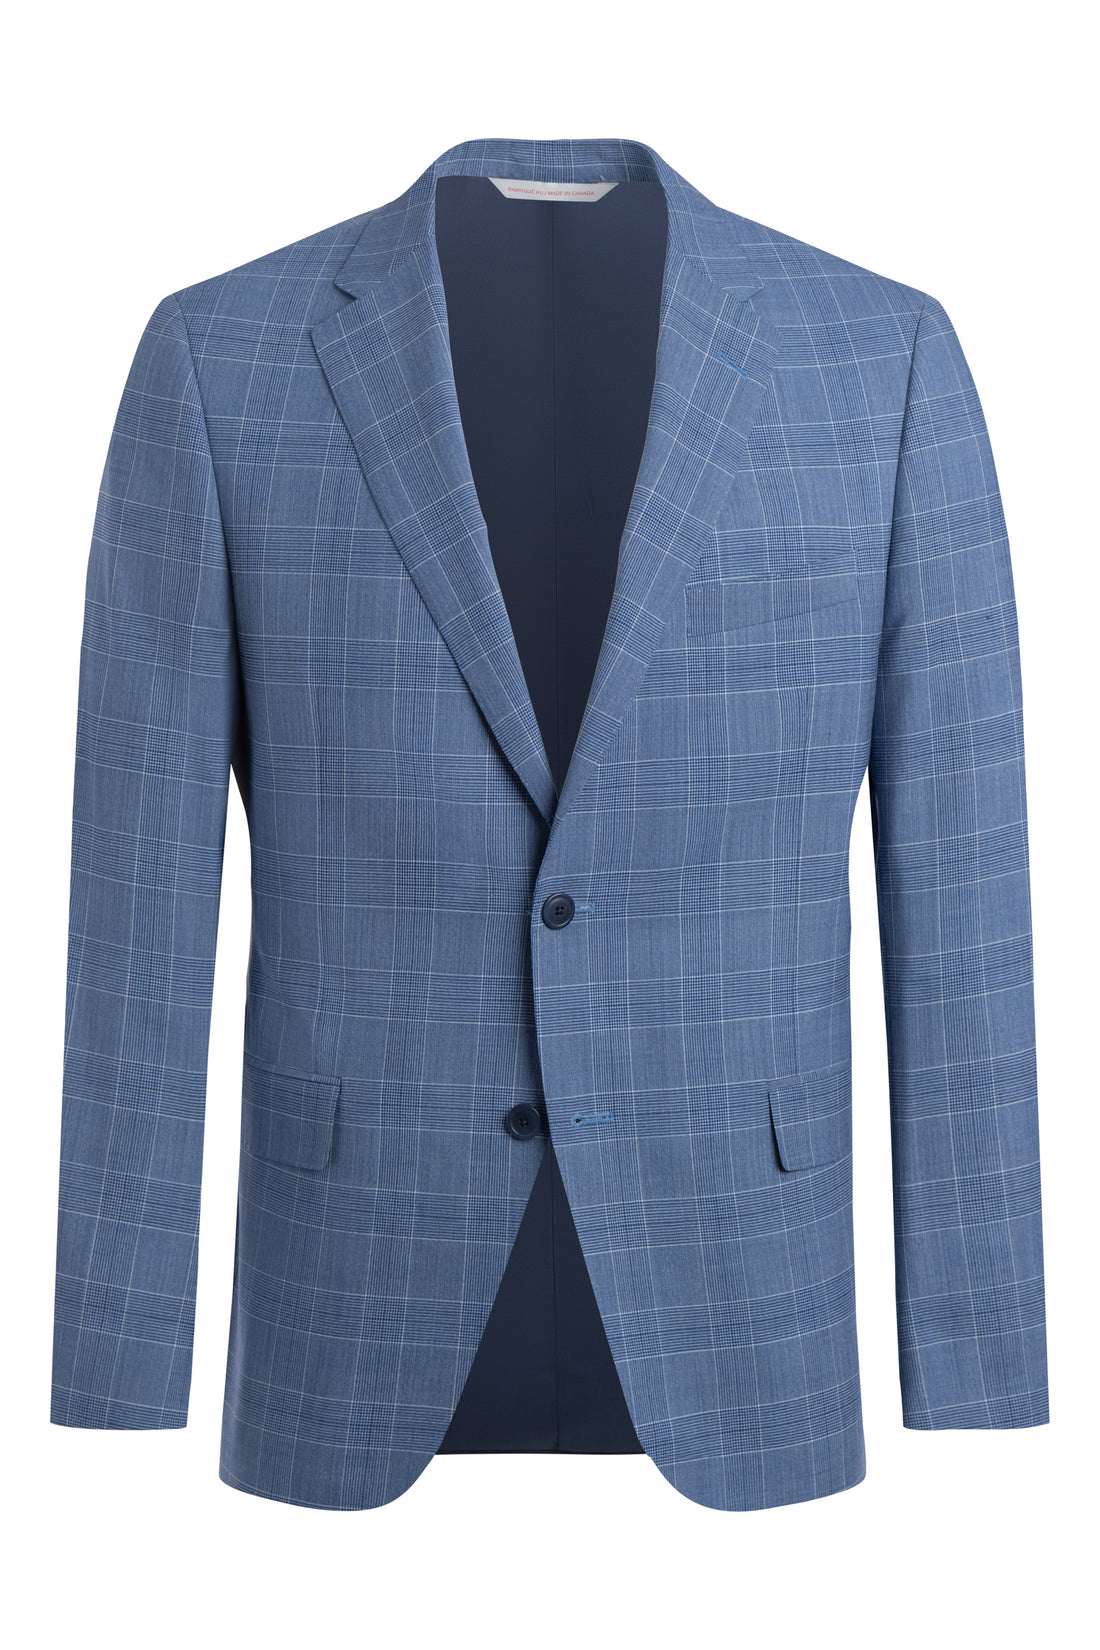 Azure Blue Tropical Plaid Suit